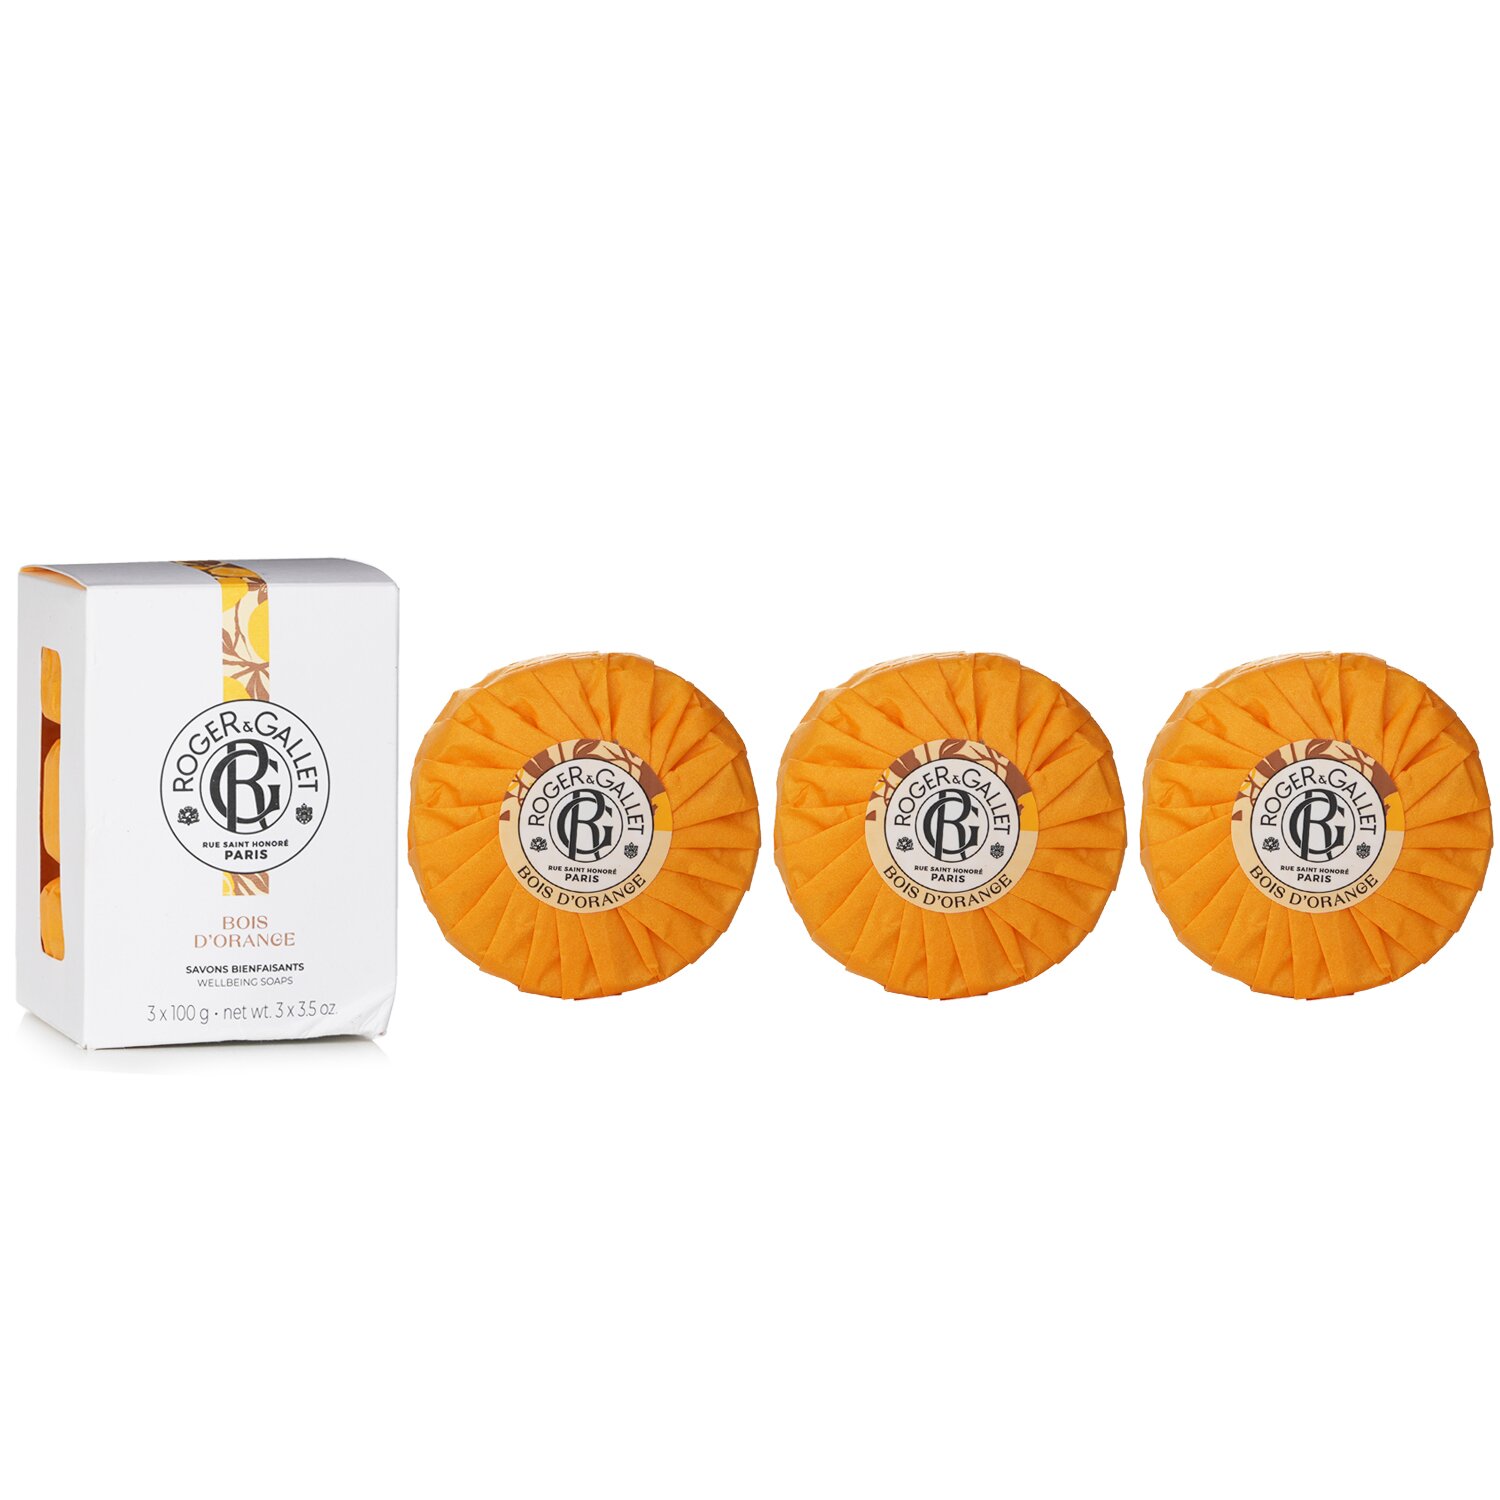 Roger & Gallet Body Wash & Shower Gel – Bois D'orange – 6.7 oz